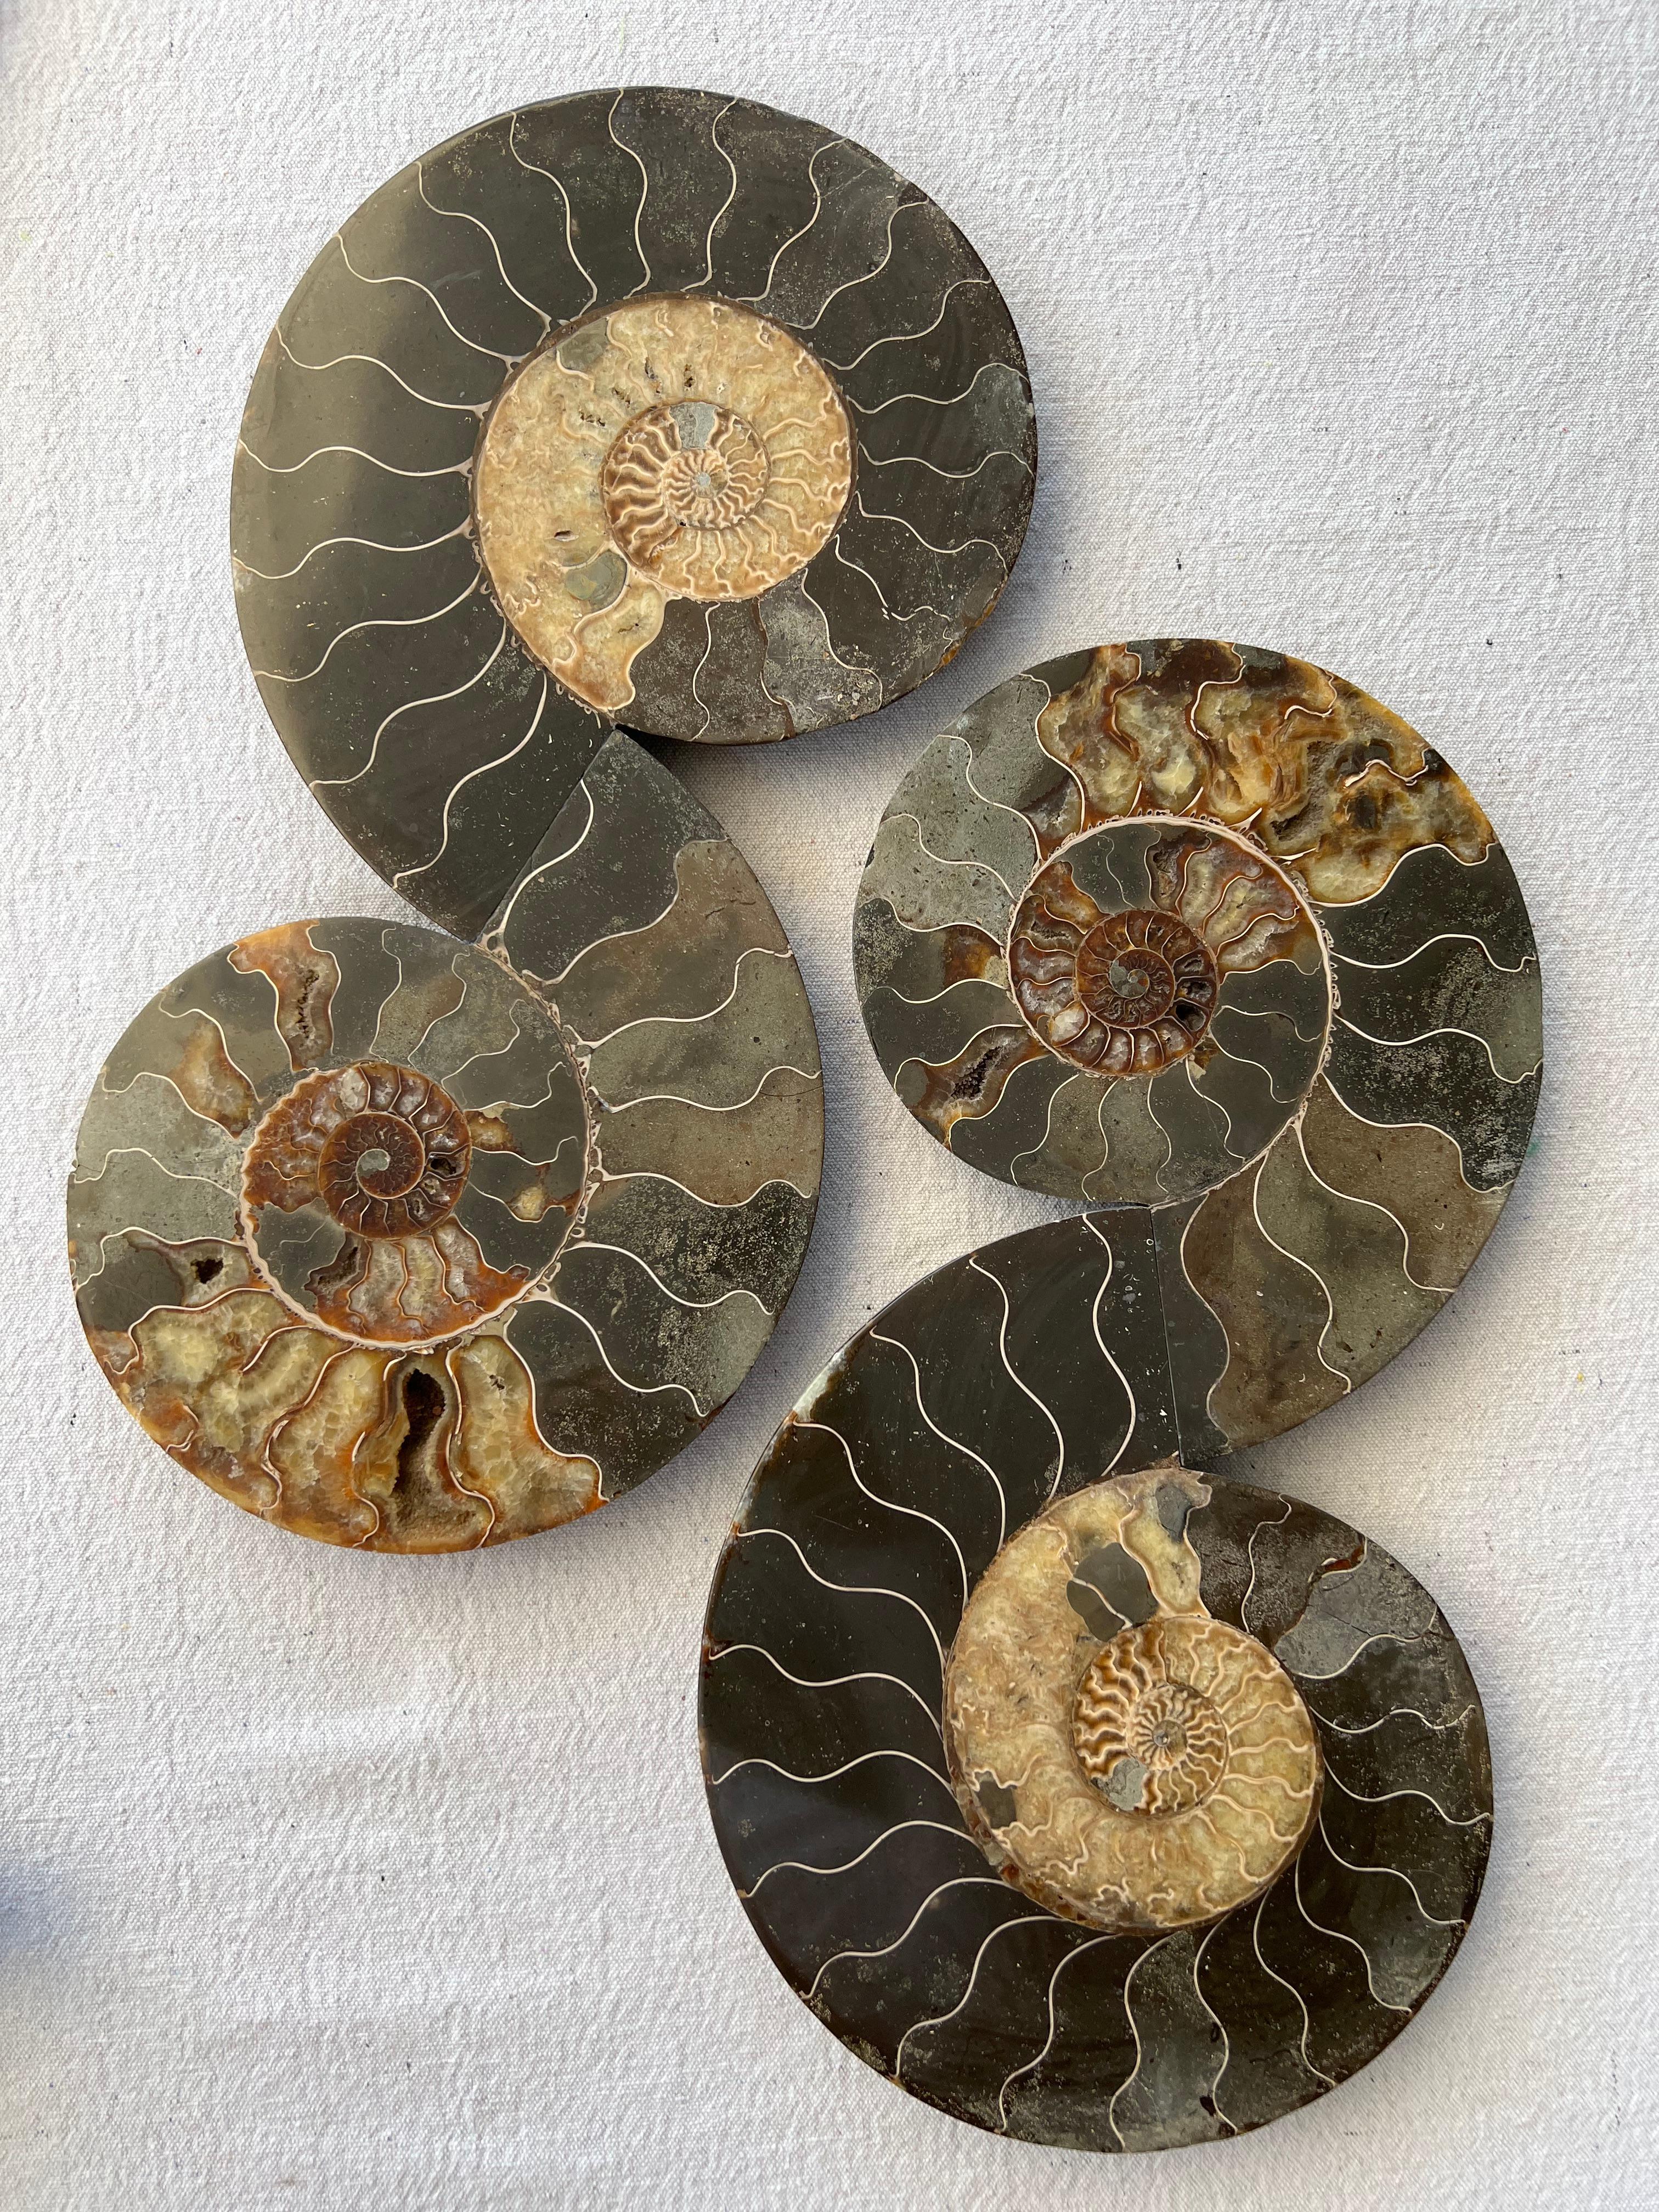 Skulpturen der Ammonitenfalten von Mary Brogger.
Ein Unikat. Signiert mit dem Stempel des Künstlers.
Abmessungen: Ø 19 x H 38 (jeweils).
MATERIALIEN: Fossilien, gemischte Medien.
